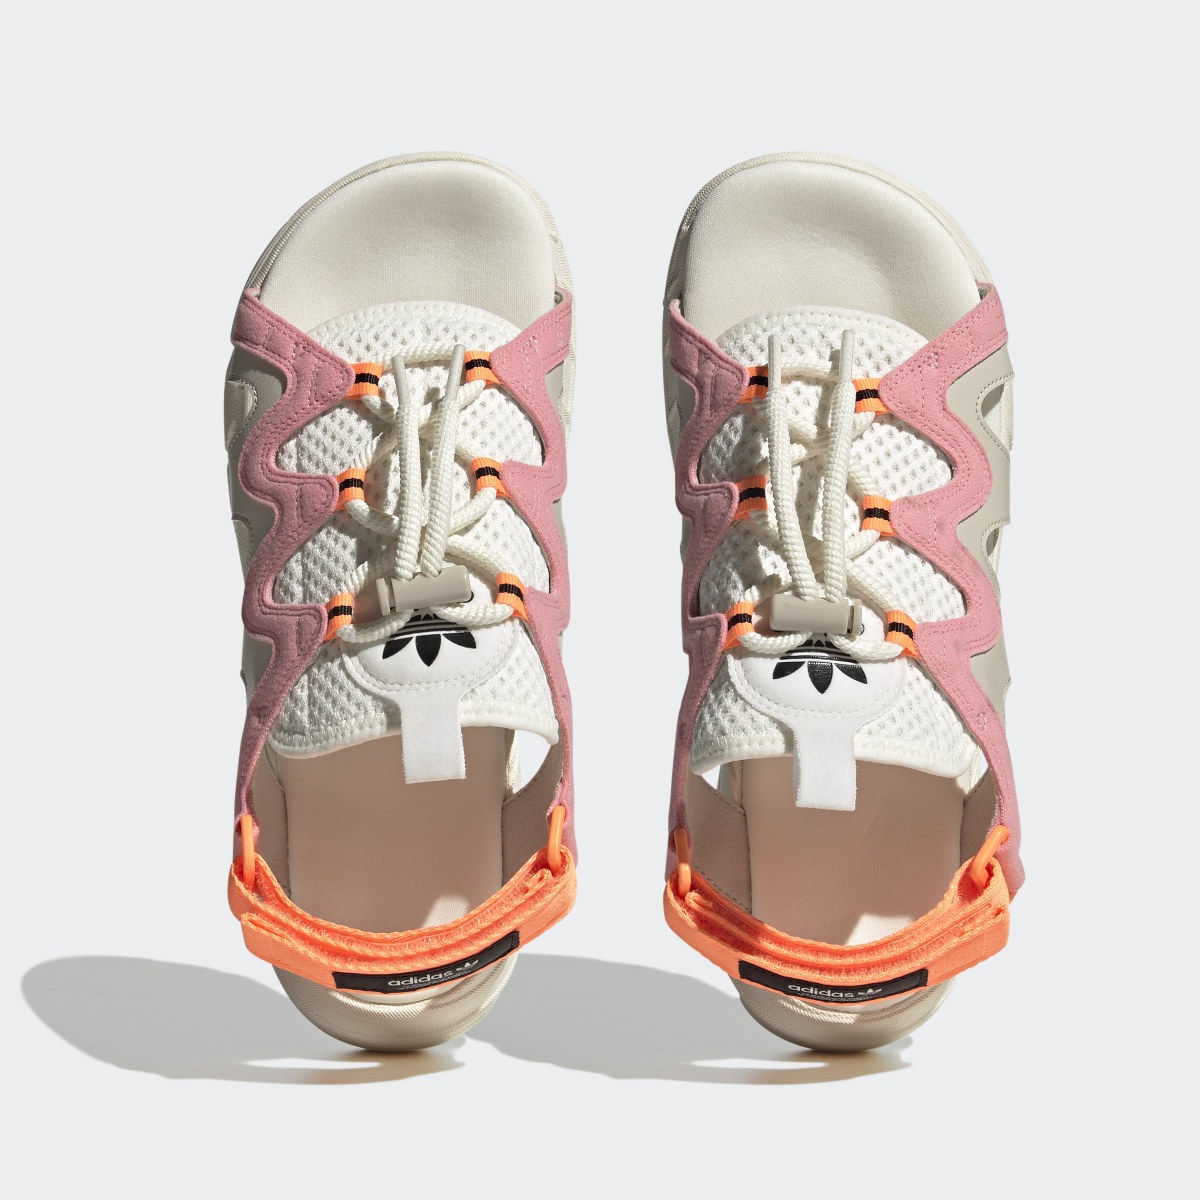 Adidas Astir Sandals. 5